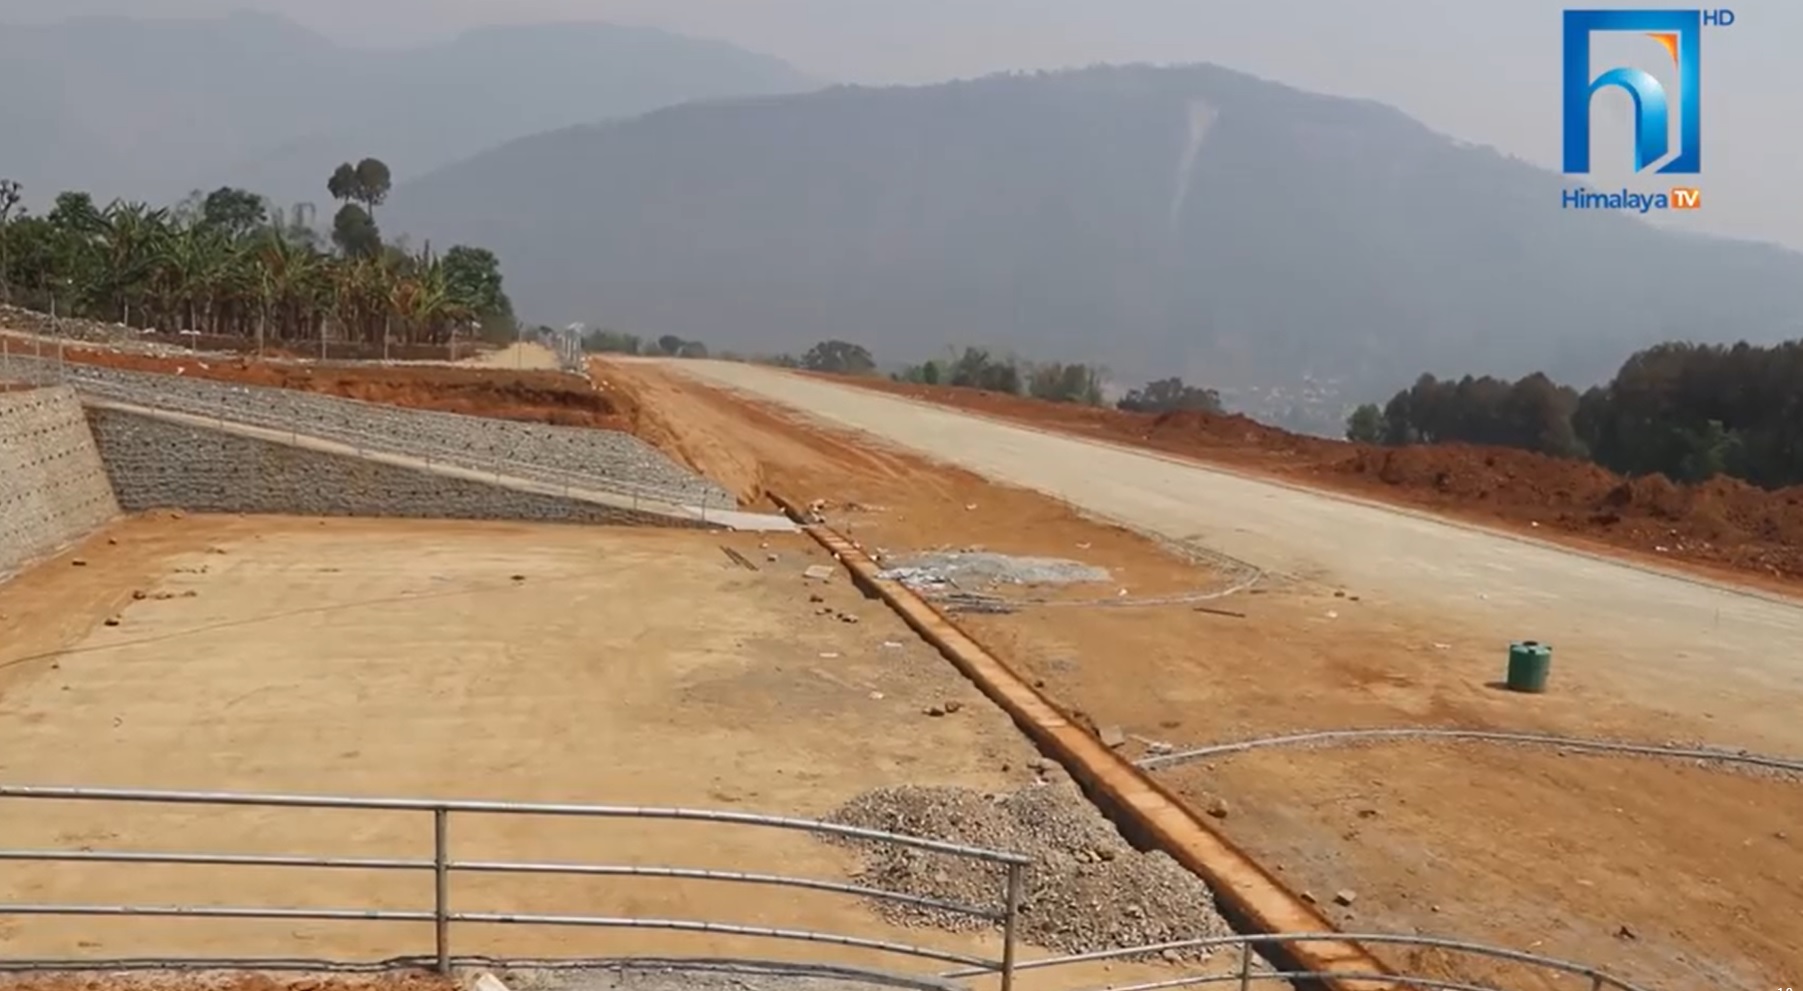 बागलुङको बलेवा विमानस्थल निर्माण कालोपत्रेको चरणमा (भिडियो रिपोर्टसहित)